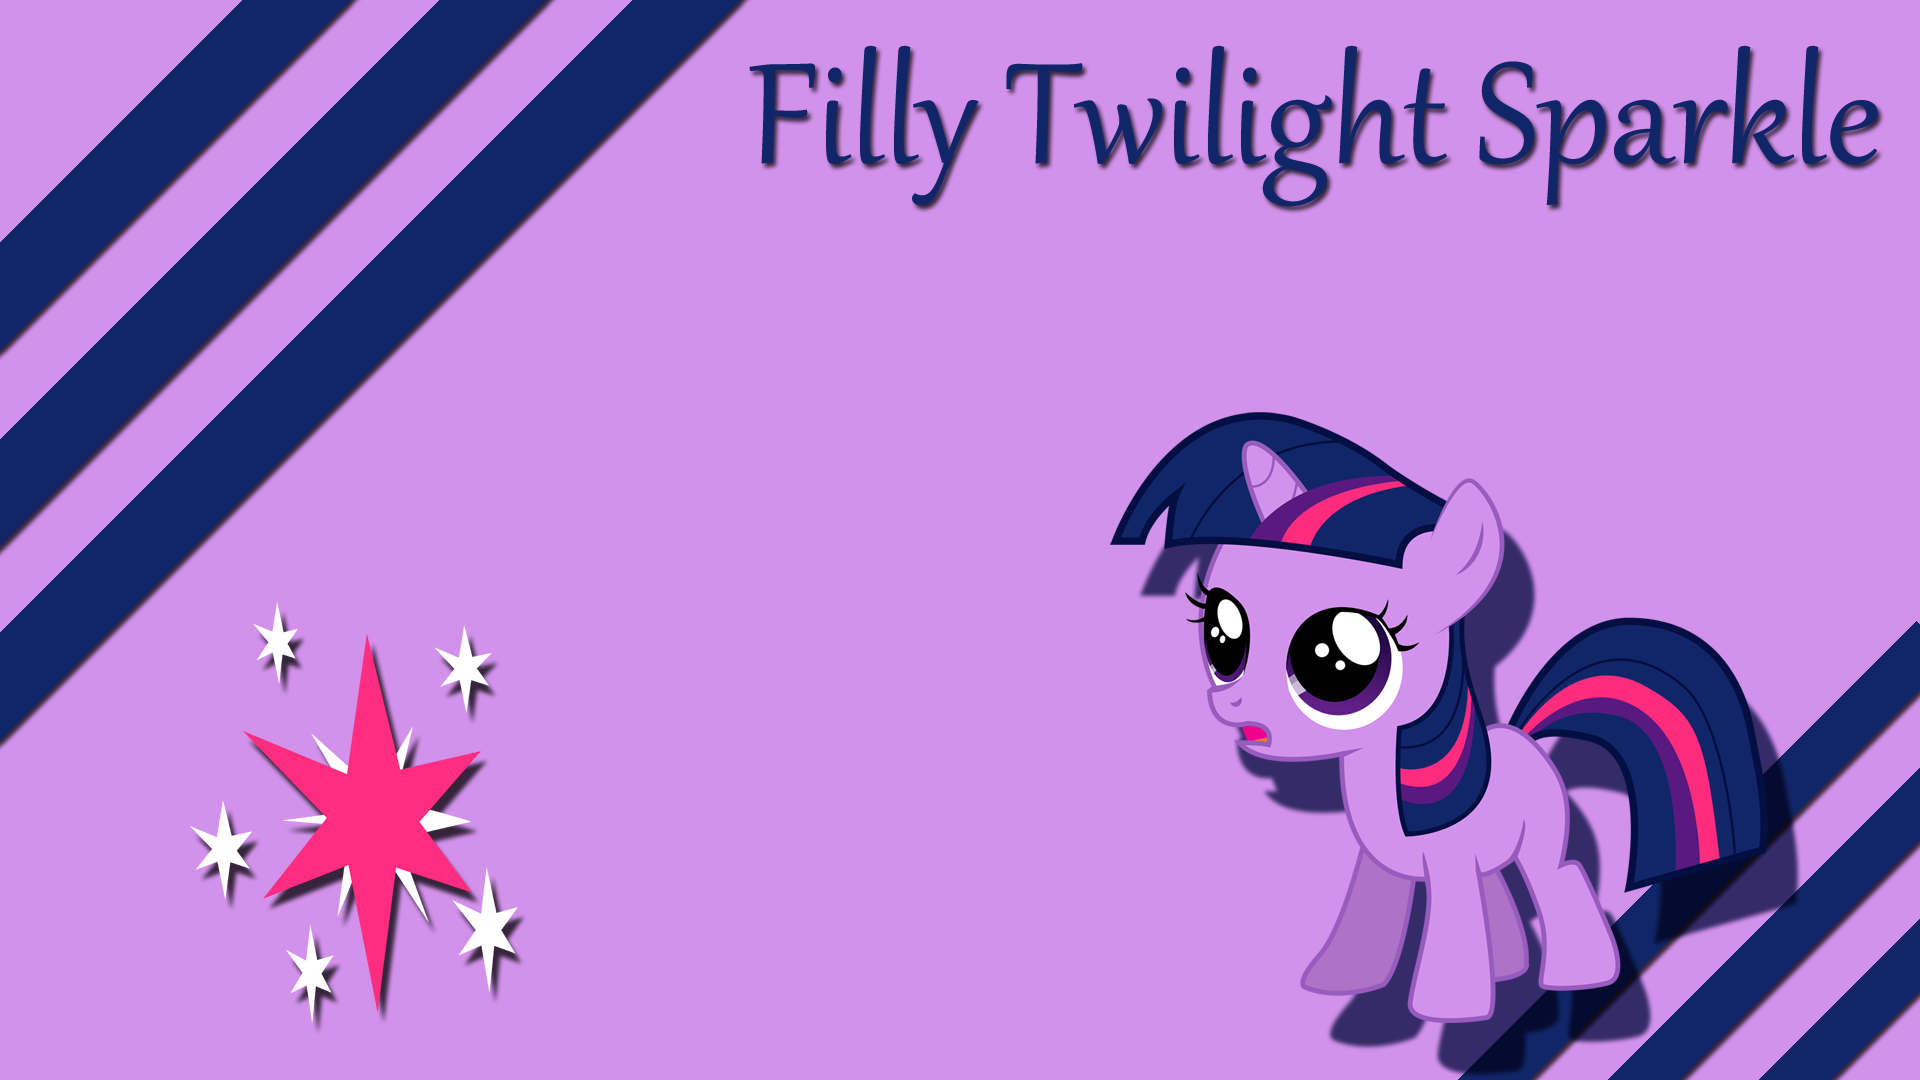 Filly Twilight Sparkle Wallpaper by Silentmatten